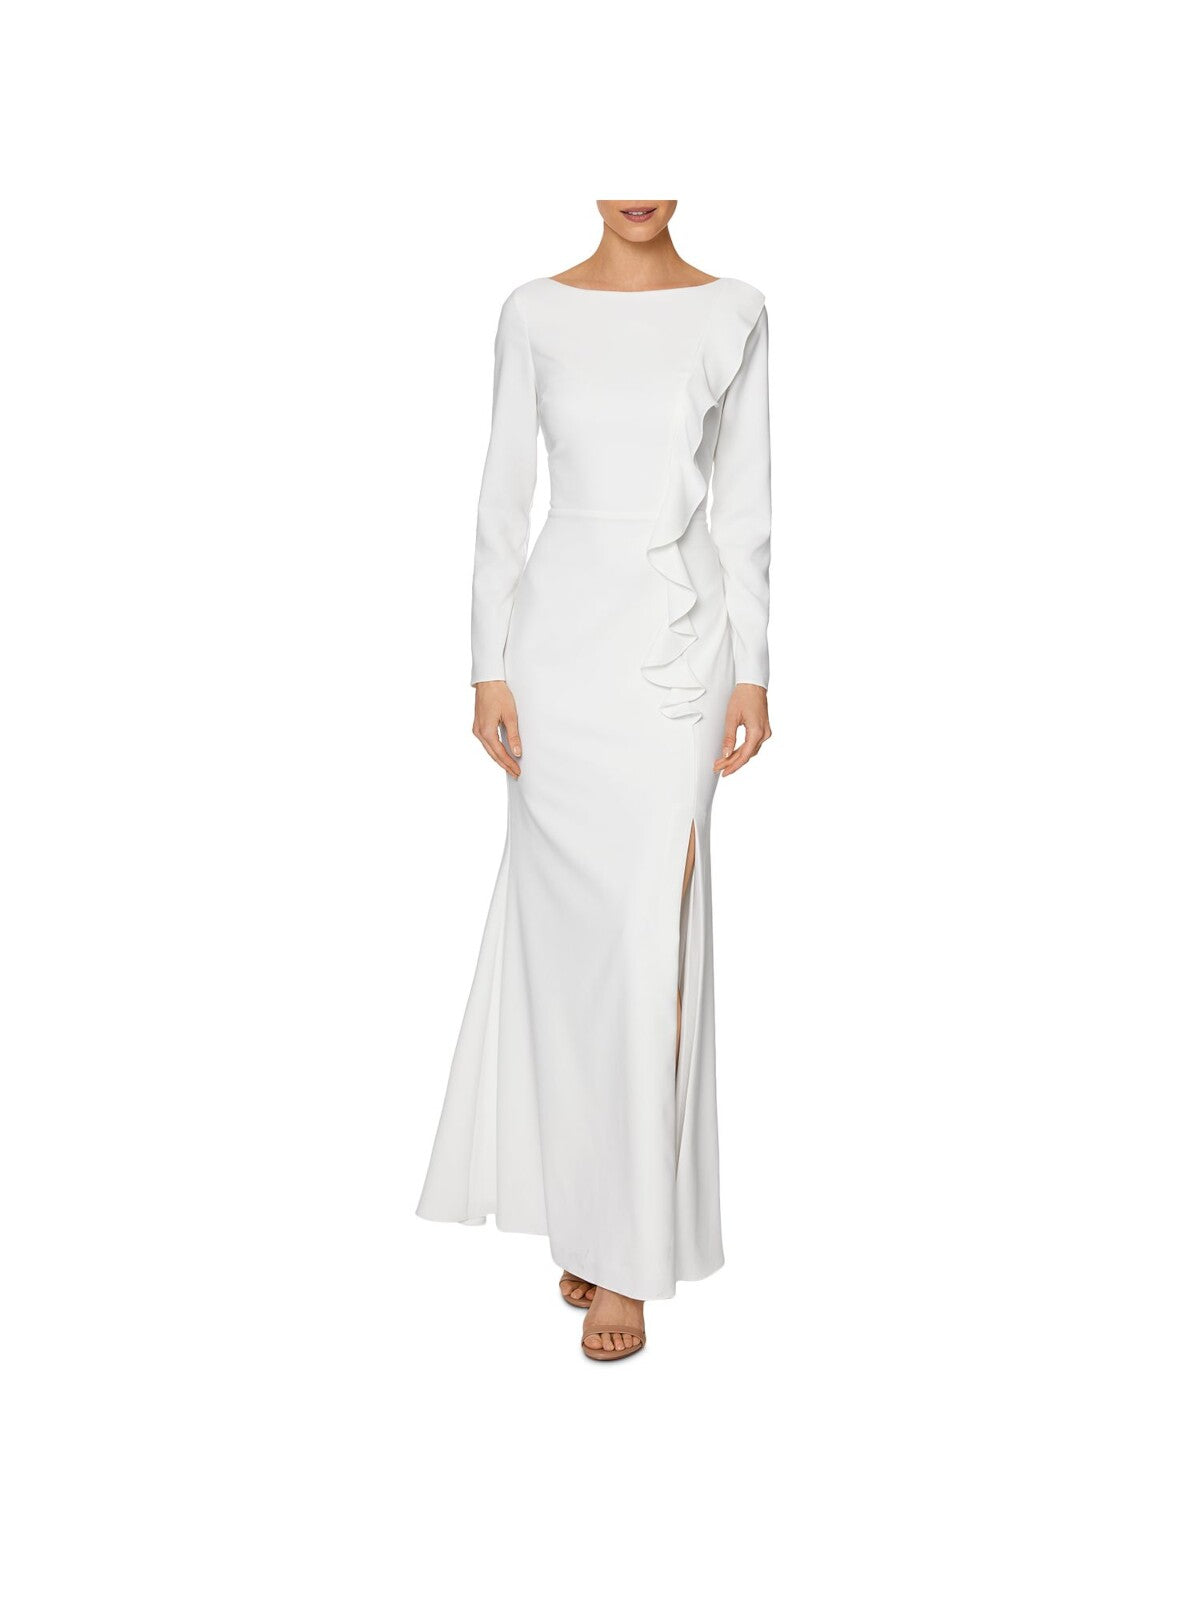 LAUNDRY Womens White Zippered Slitted Long Sleeve Boat Neck Full-Length Formal Sheath Dress 0